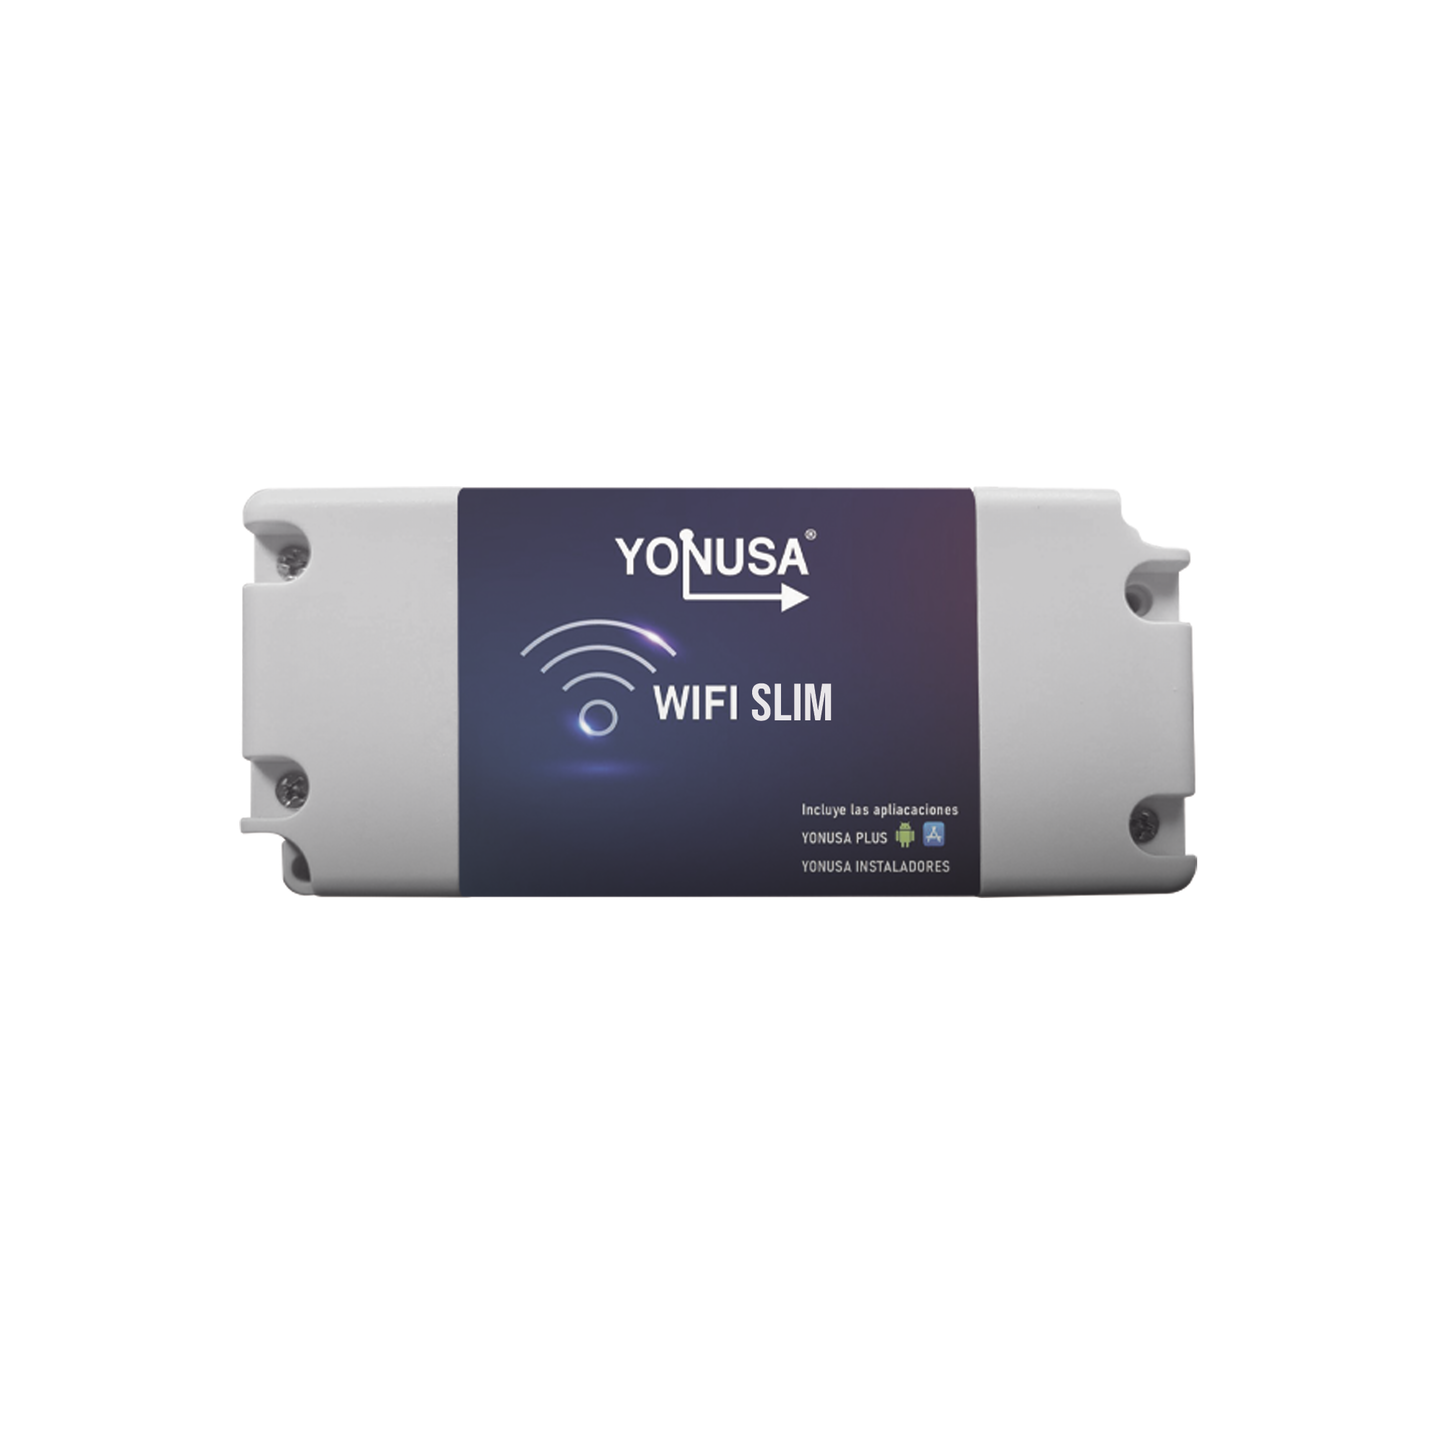 Modulo WIFI SLIM para uso en Energizadores YONUSA / Aplicación sin costo / Botón de Pánico